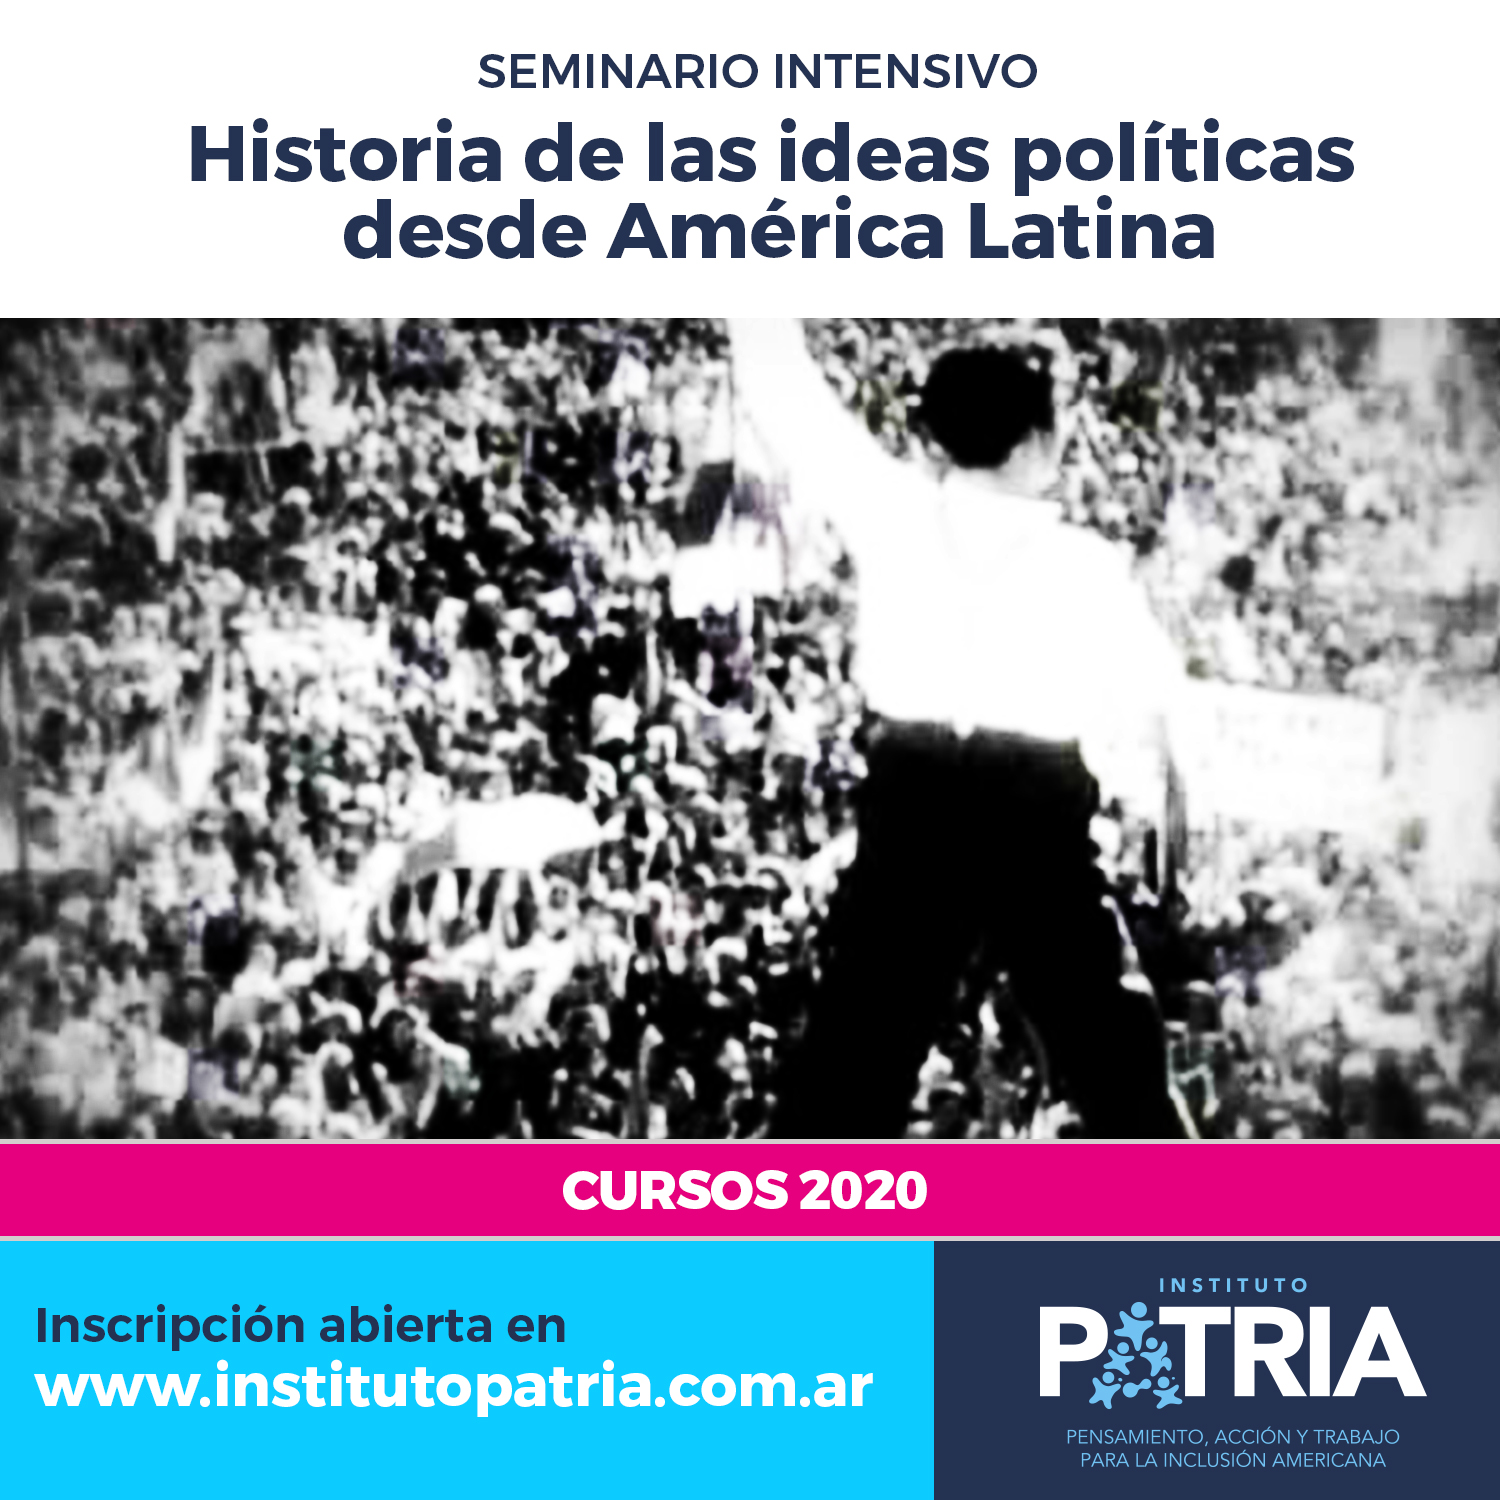 Se posterga el inicio del Seminario Intensivo HISTORIA DE LA IDEAS POLÍTICAS DESDE AMÉRICA LATINA